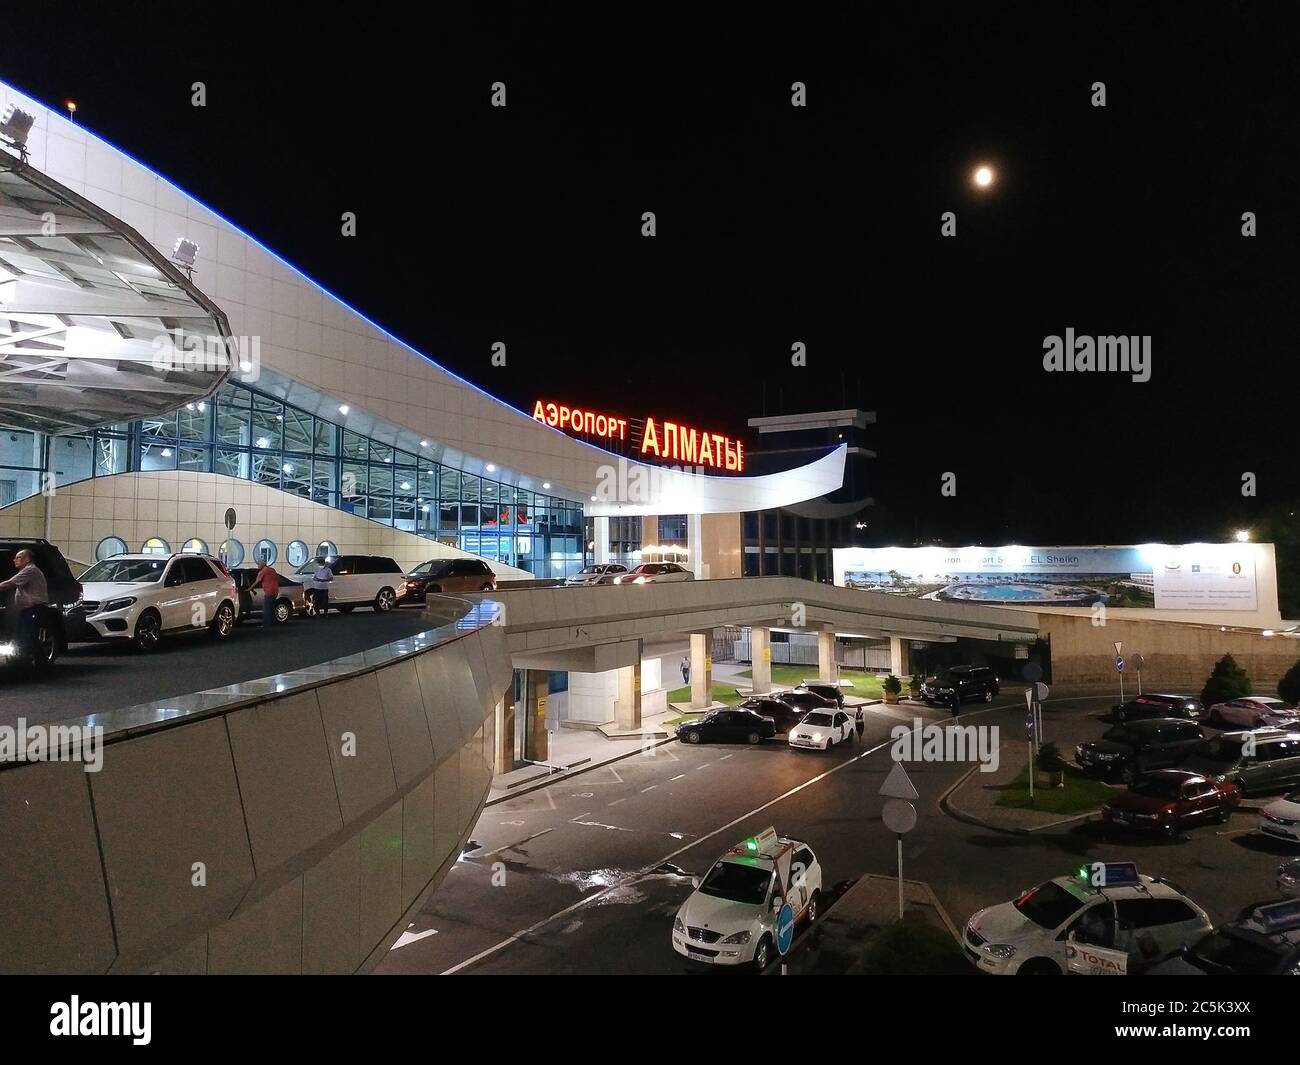 Almaty, Kasachstan - 22. Juni 2019: Architektur des Flughafens Almaty. Der Flughafen Almaty ist der größte internationale Flughafen in Kasachstan. Stockfoto